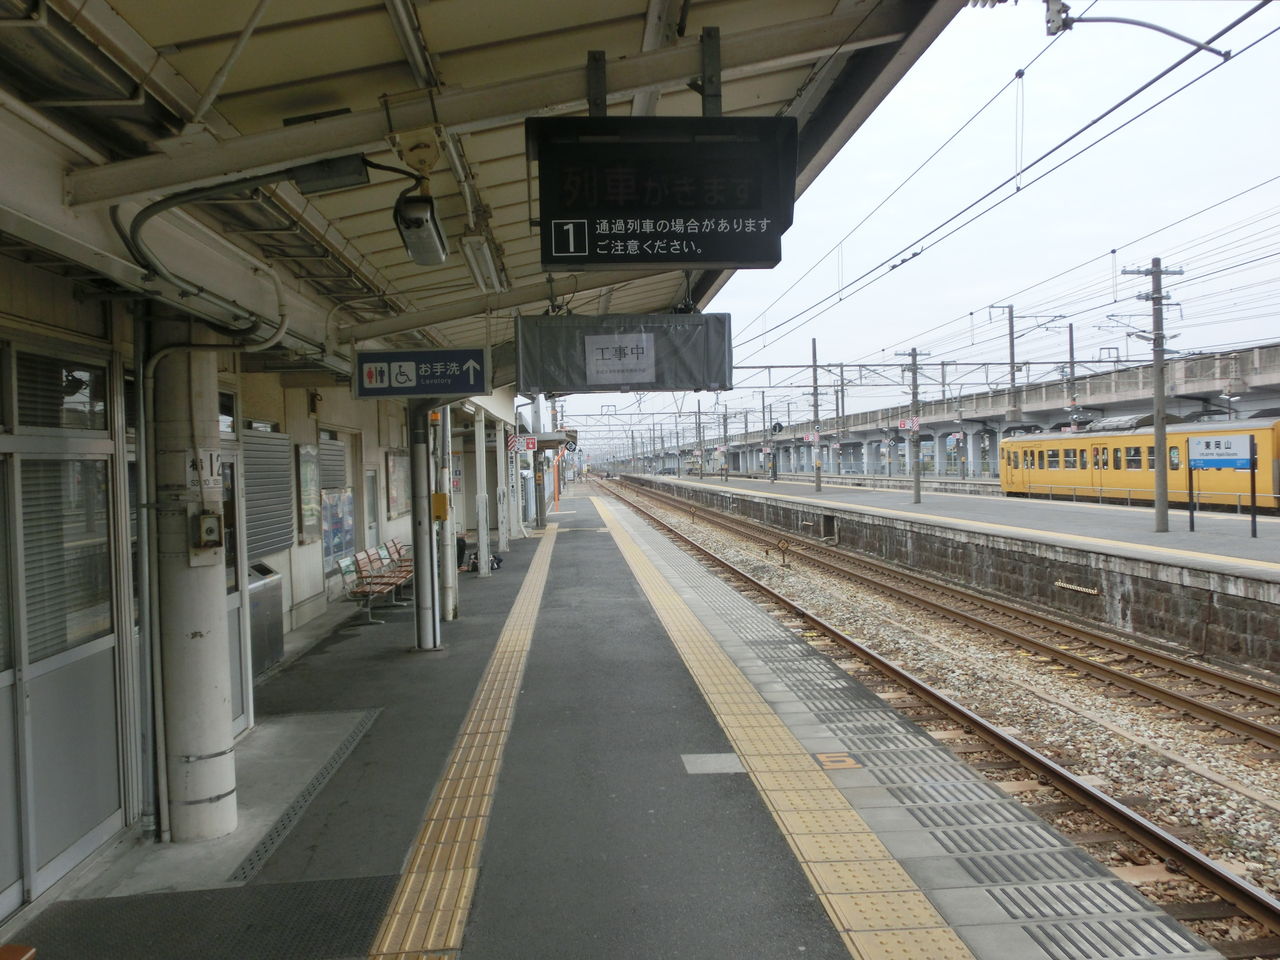 駅紹介 東岡山駅 駅舎 駅名標 ホームの様子 15年3月 関西のjrへようこそ